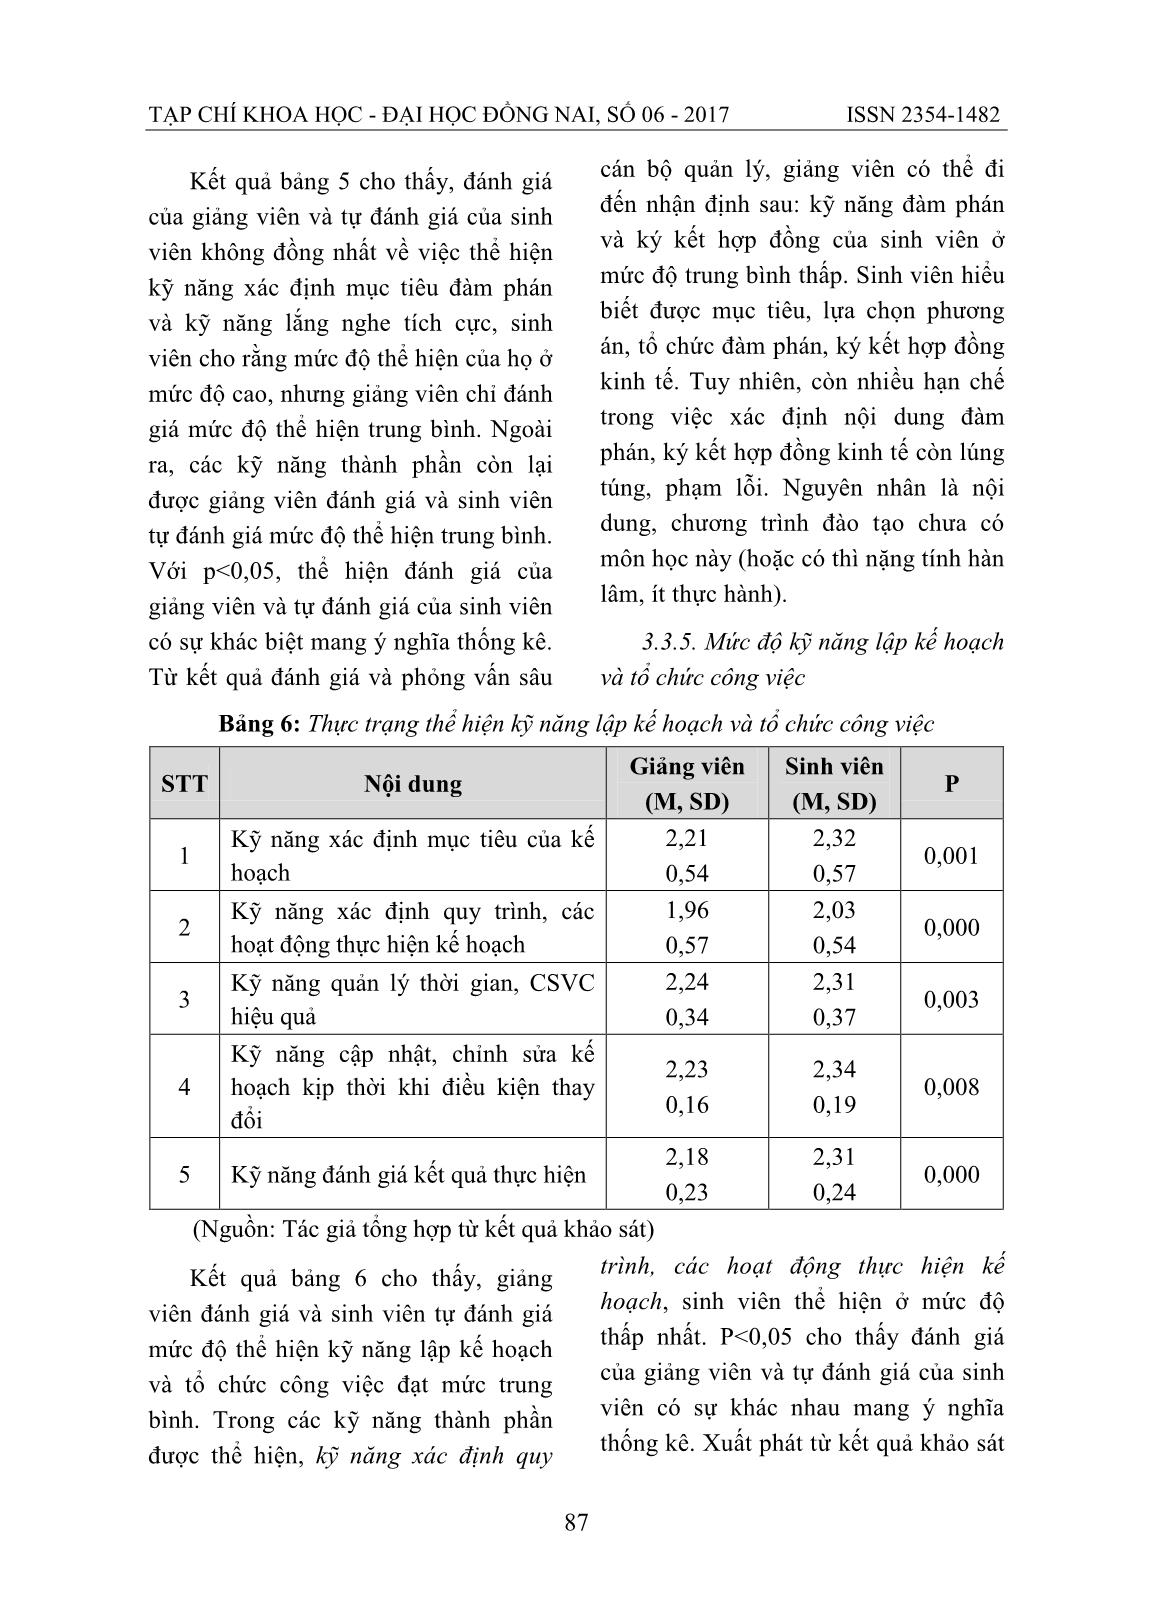 Phát triển kỹ năng mềm cho sinh viên khoa kinh tế trường đại học Đồng Nai theo tiếp cận chuẩn đầu ra trang 8